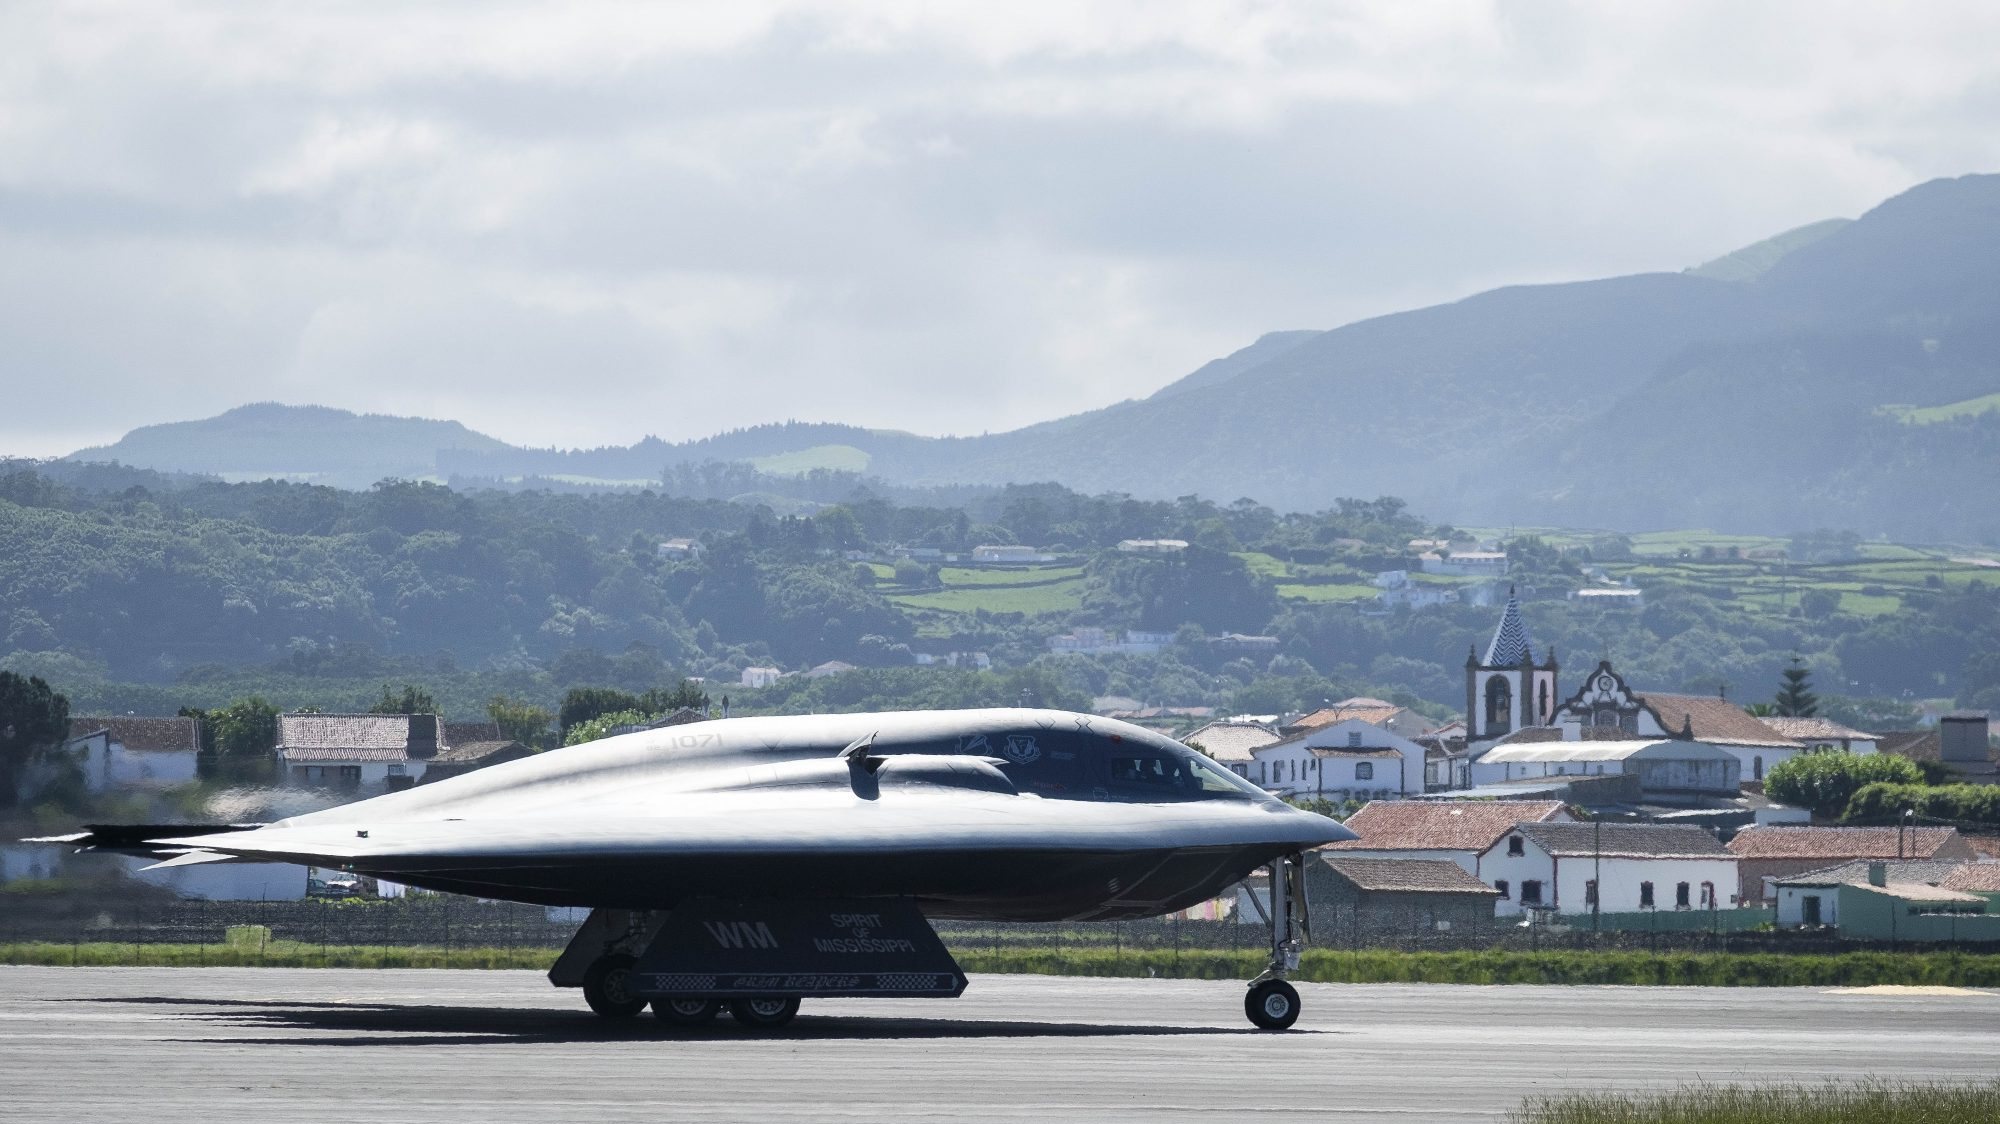 Em 2015, os EUA reduziram de 900 para 400 os trabalhadores portugueses e de 650 para 165 o pessoal militar e civil norte-americano da Base das Lajes, na Ilha Terceira, Açores.